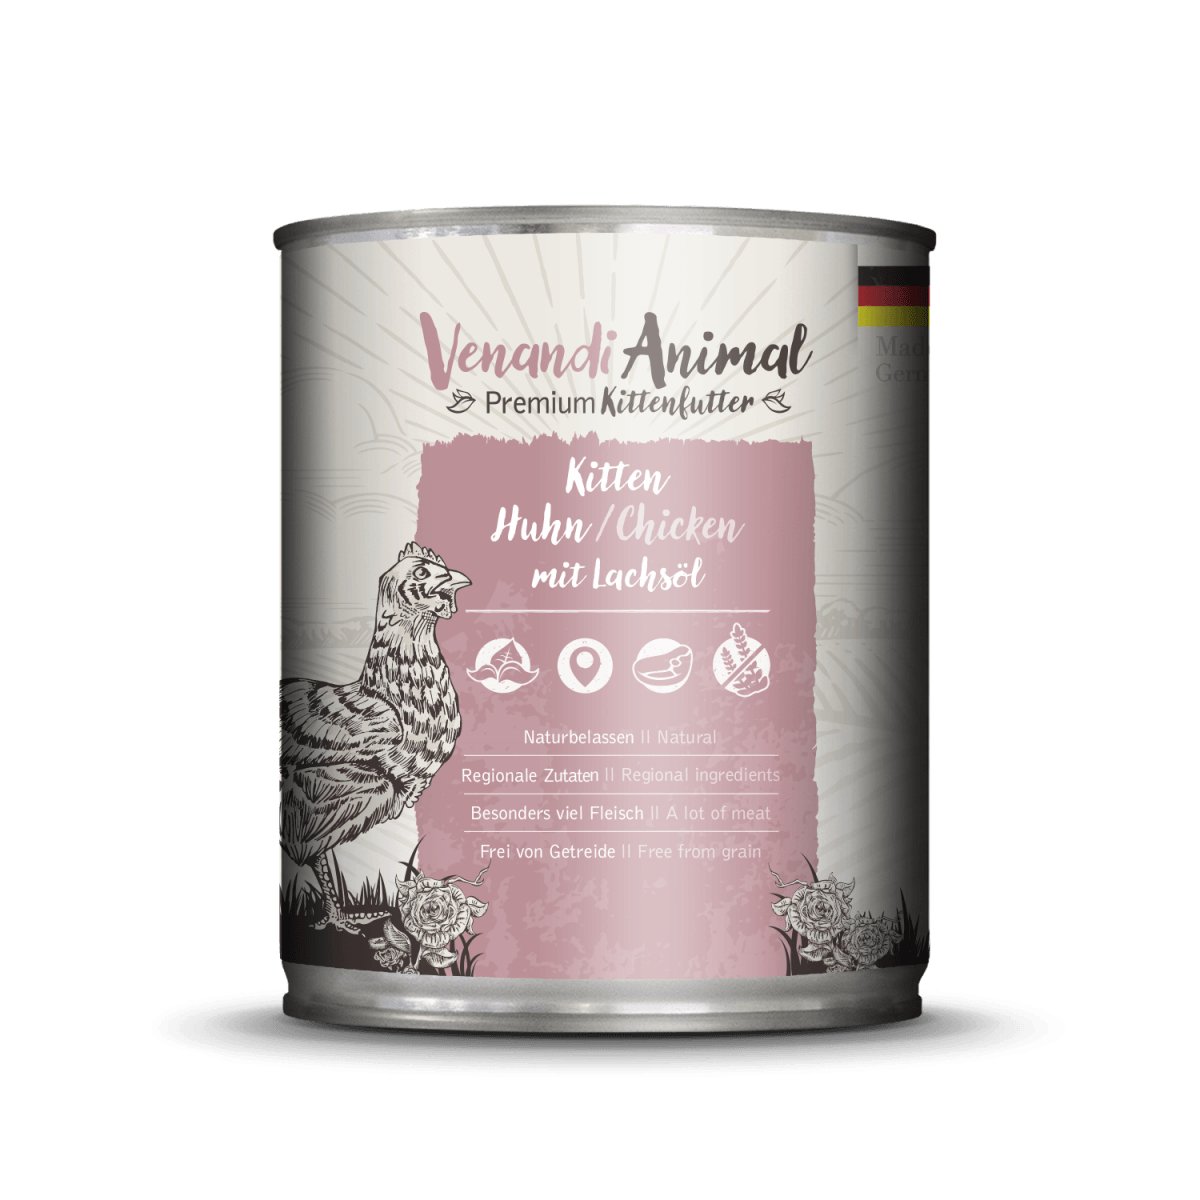 VENANDI ANIMAL Kitten – Chicken with Salmon Oil - Pets Villa